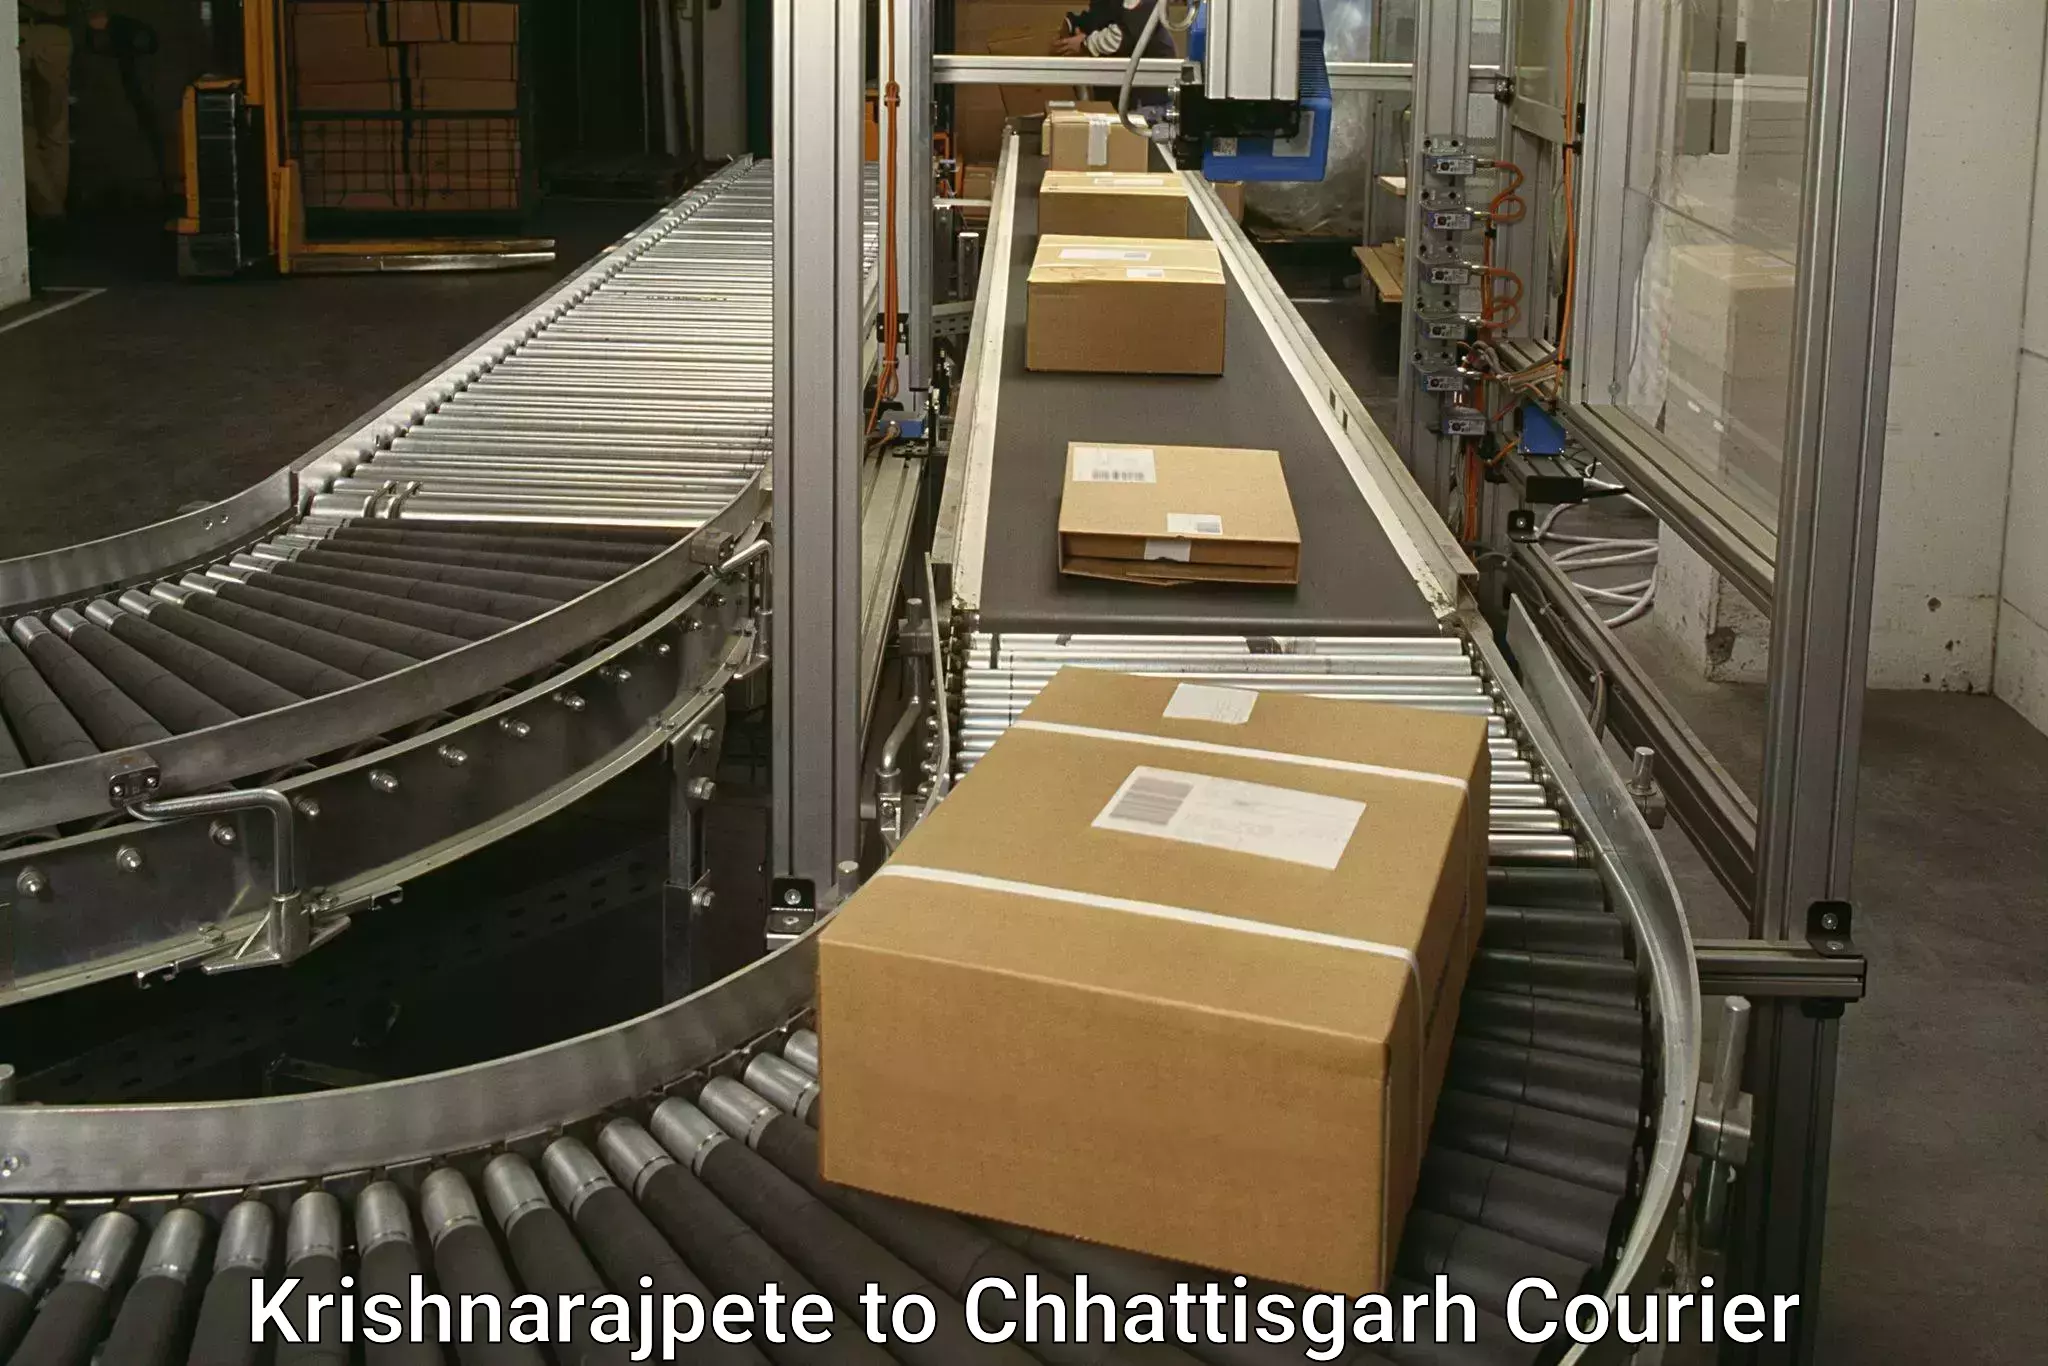 Customer-oriented courier services Krishnarajpete to Bijapur Chhattisgarh